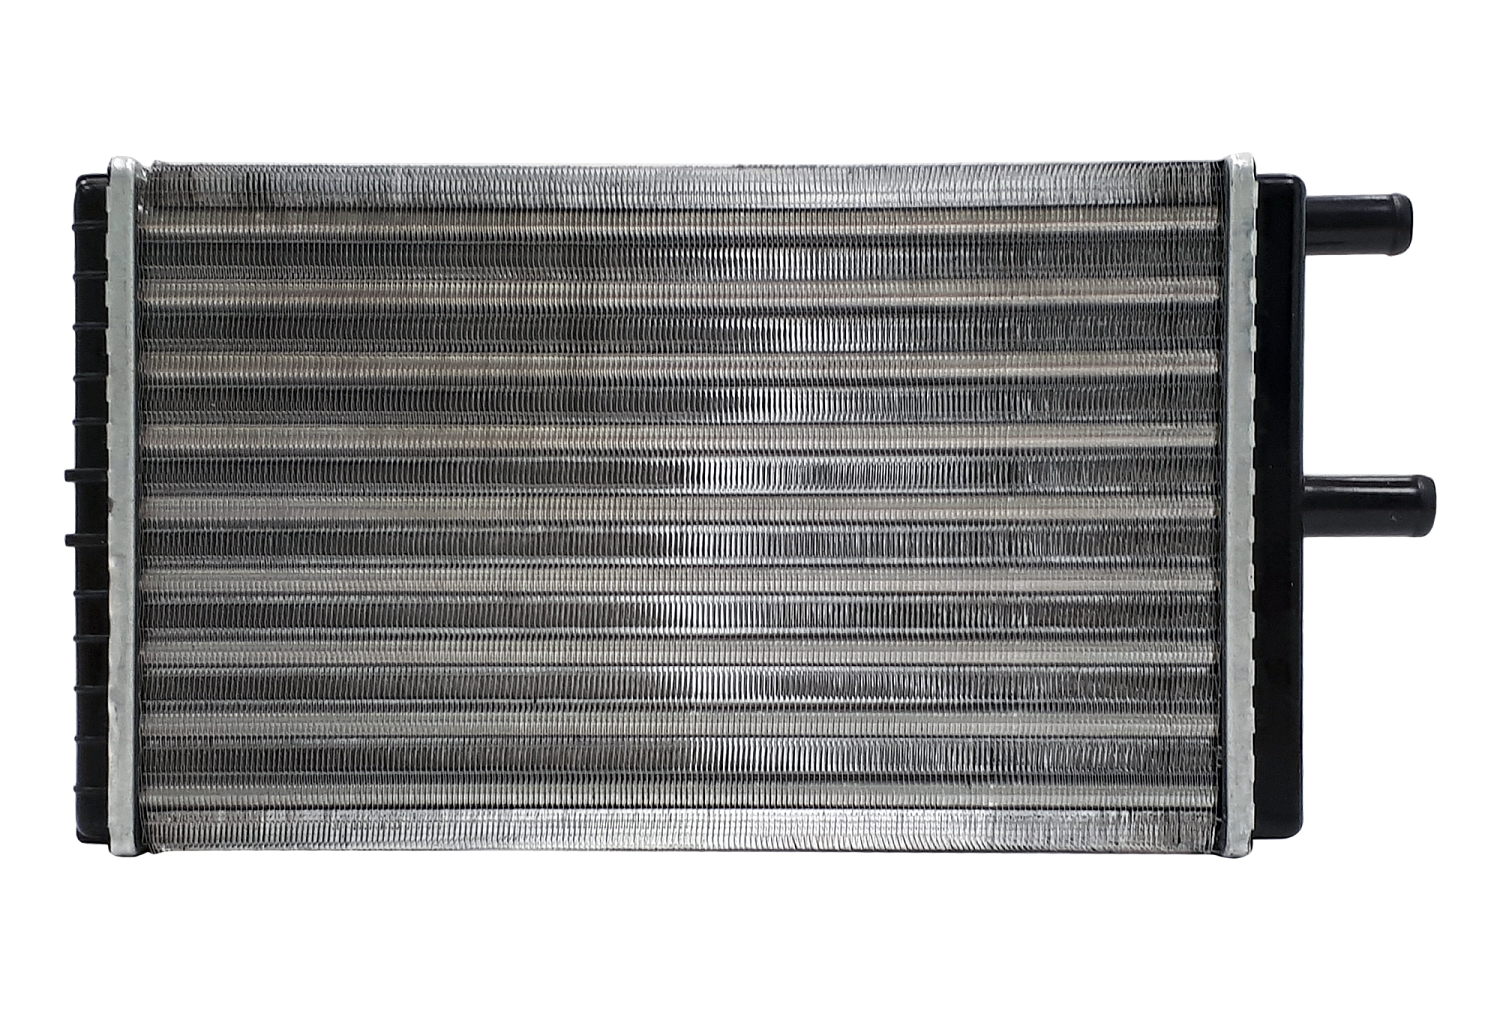 Радиатор отопителя М-2141, алюминевый (Прамо) ЛР2141.8101060